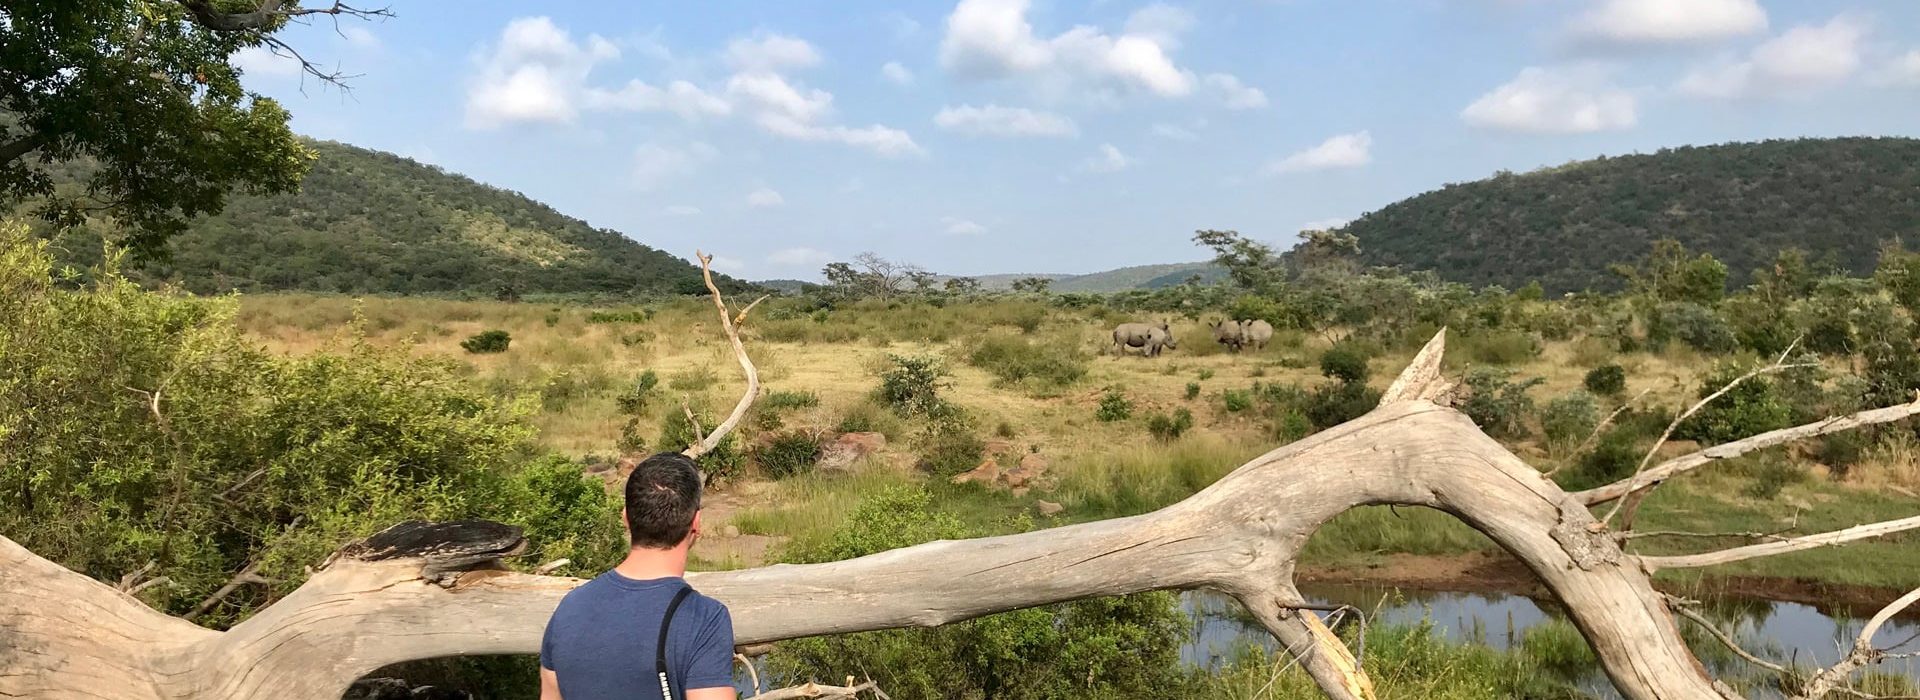 Nashörner Zum Fuß